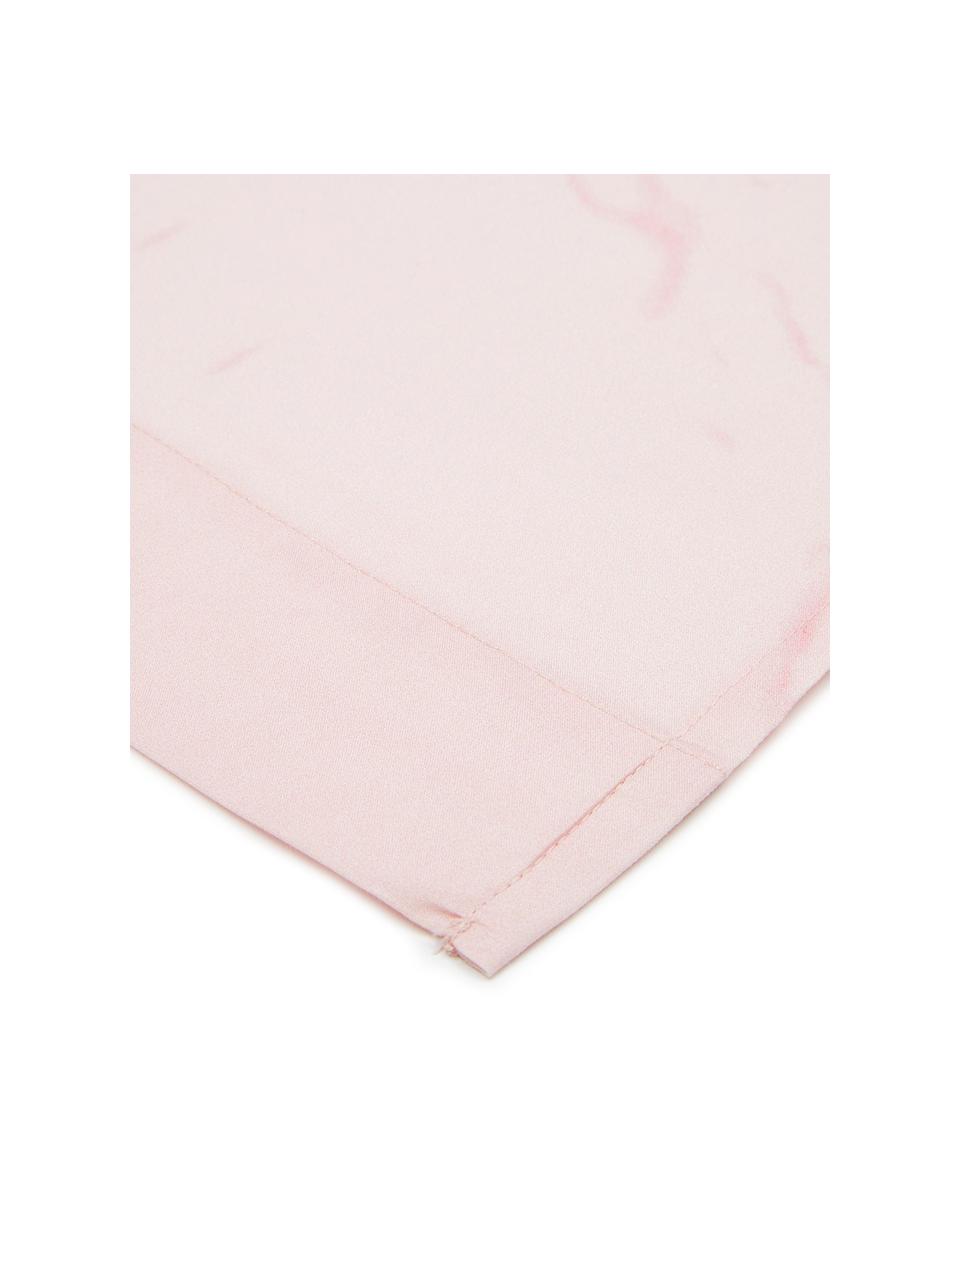 Drap plat en percale Malin, Endroit : imprimé marbré, rose Envers : rose, uni, 180 x 300 cm